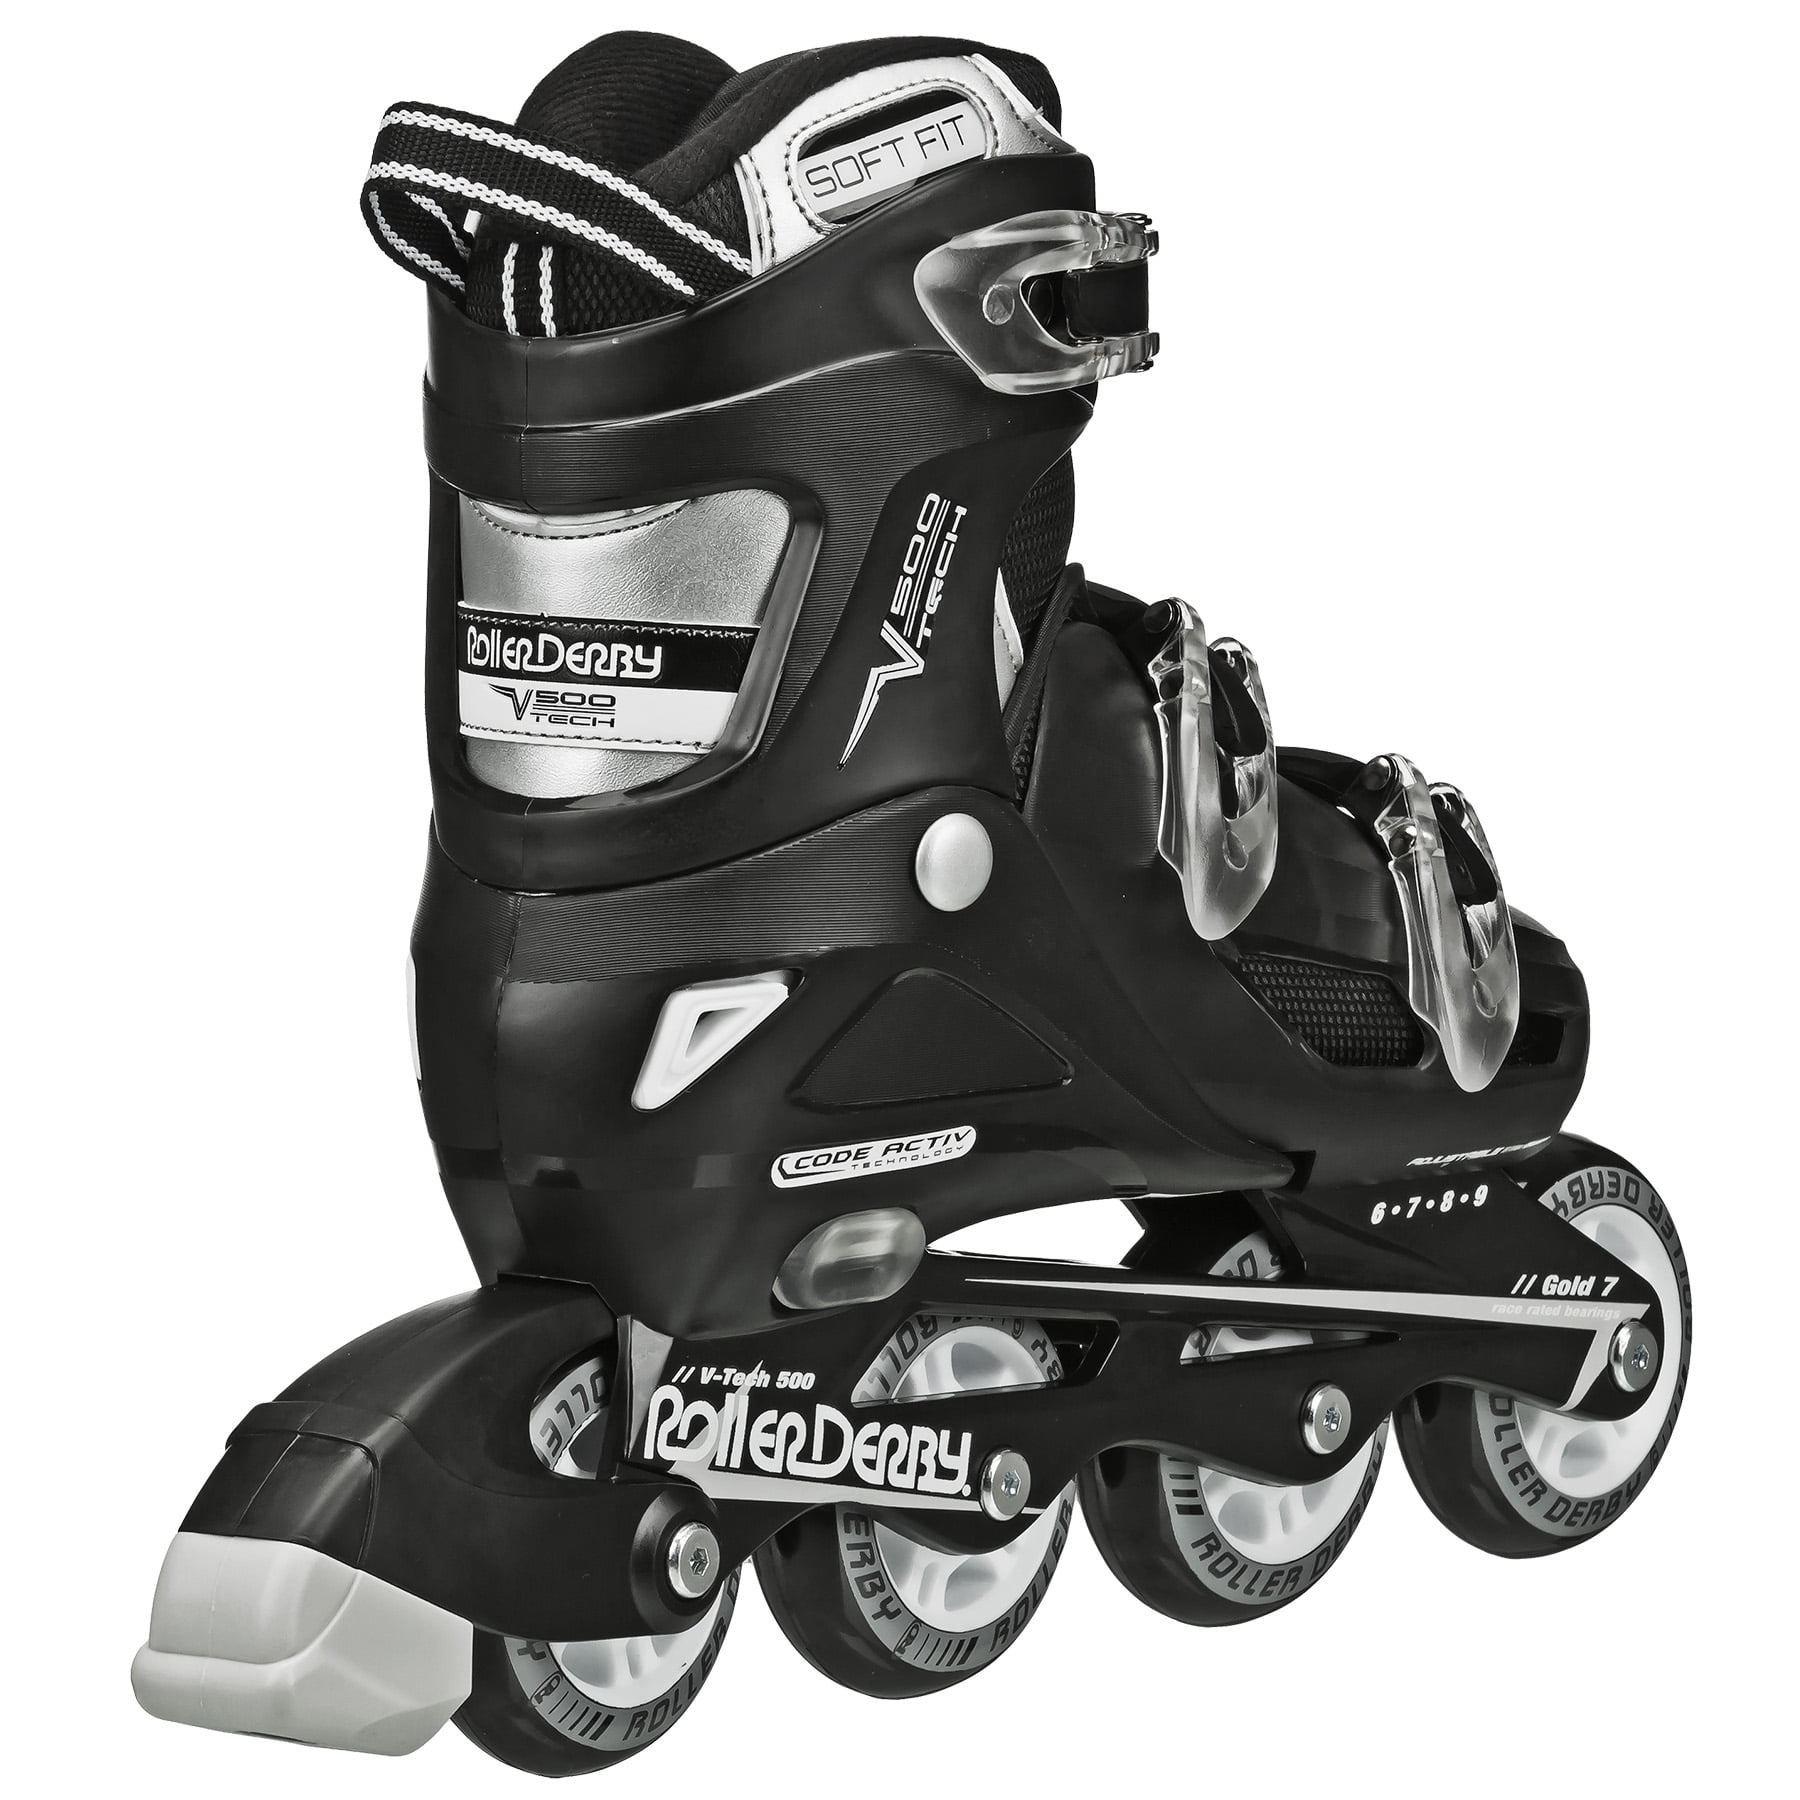 Roller Derby V-Tech 500 Men's Inline Skate with Adjustable Sizing, Black -  Walmart.com